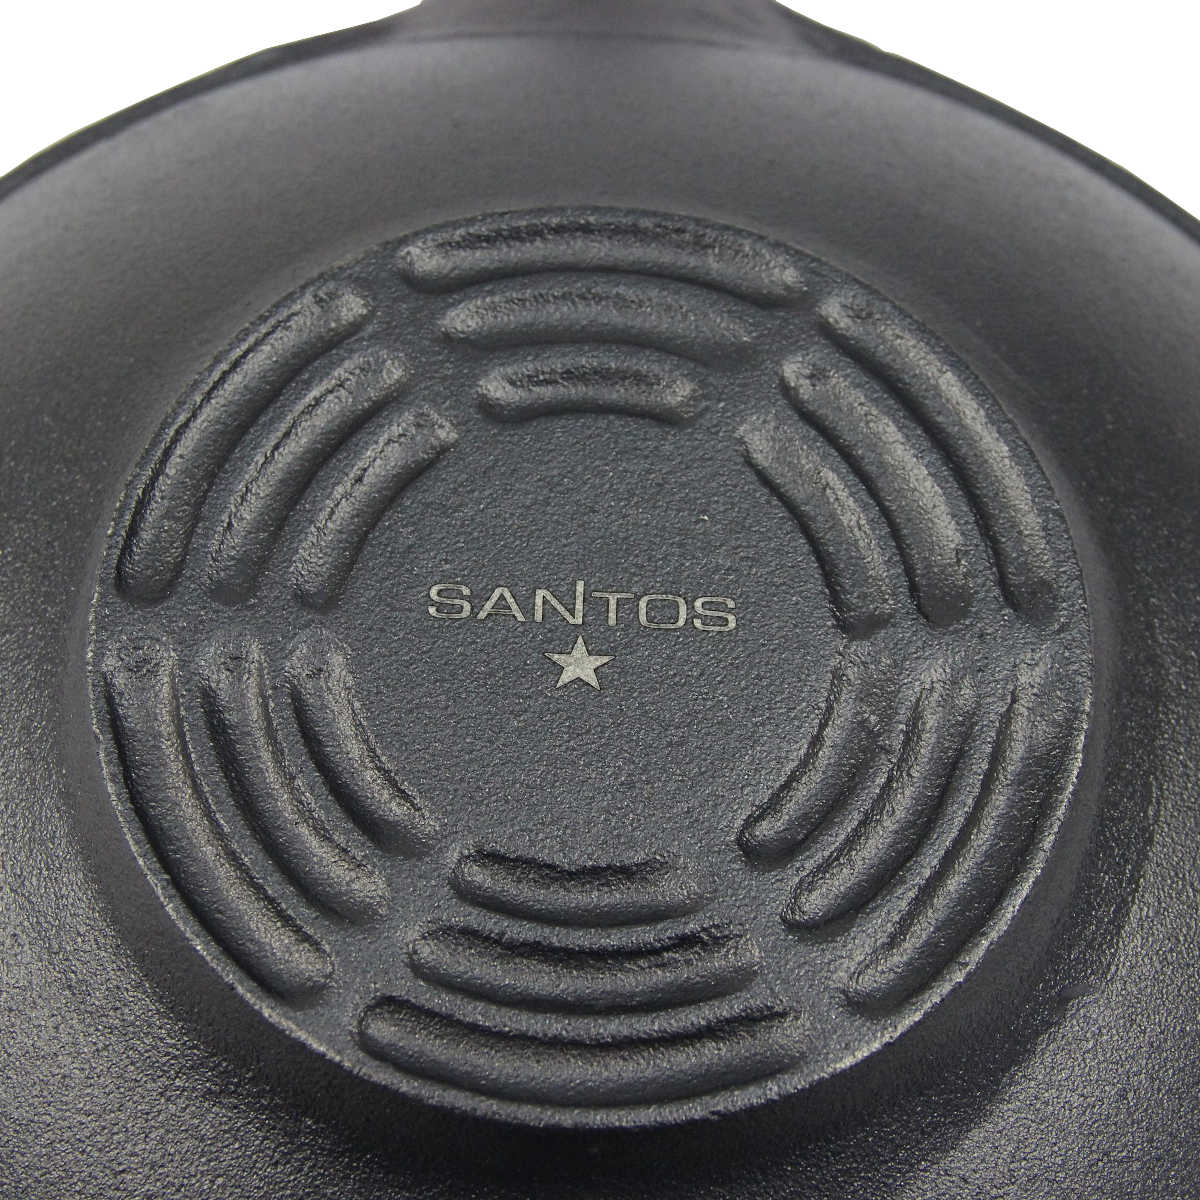 SANTOS Gusseisen Wokpfanne rund - Guss-Wok - ø31,8cm x 48,8cm - Feuertopf -  Grilltopf - ideal für Lagerfeuer, Feuerstelle oder Kohle- oder Gas-Grill